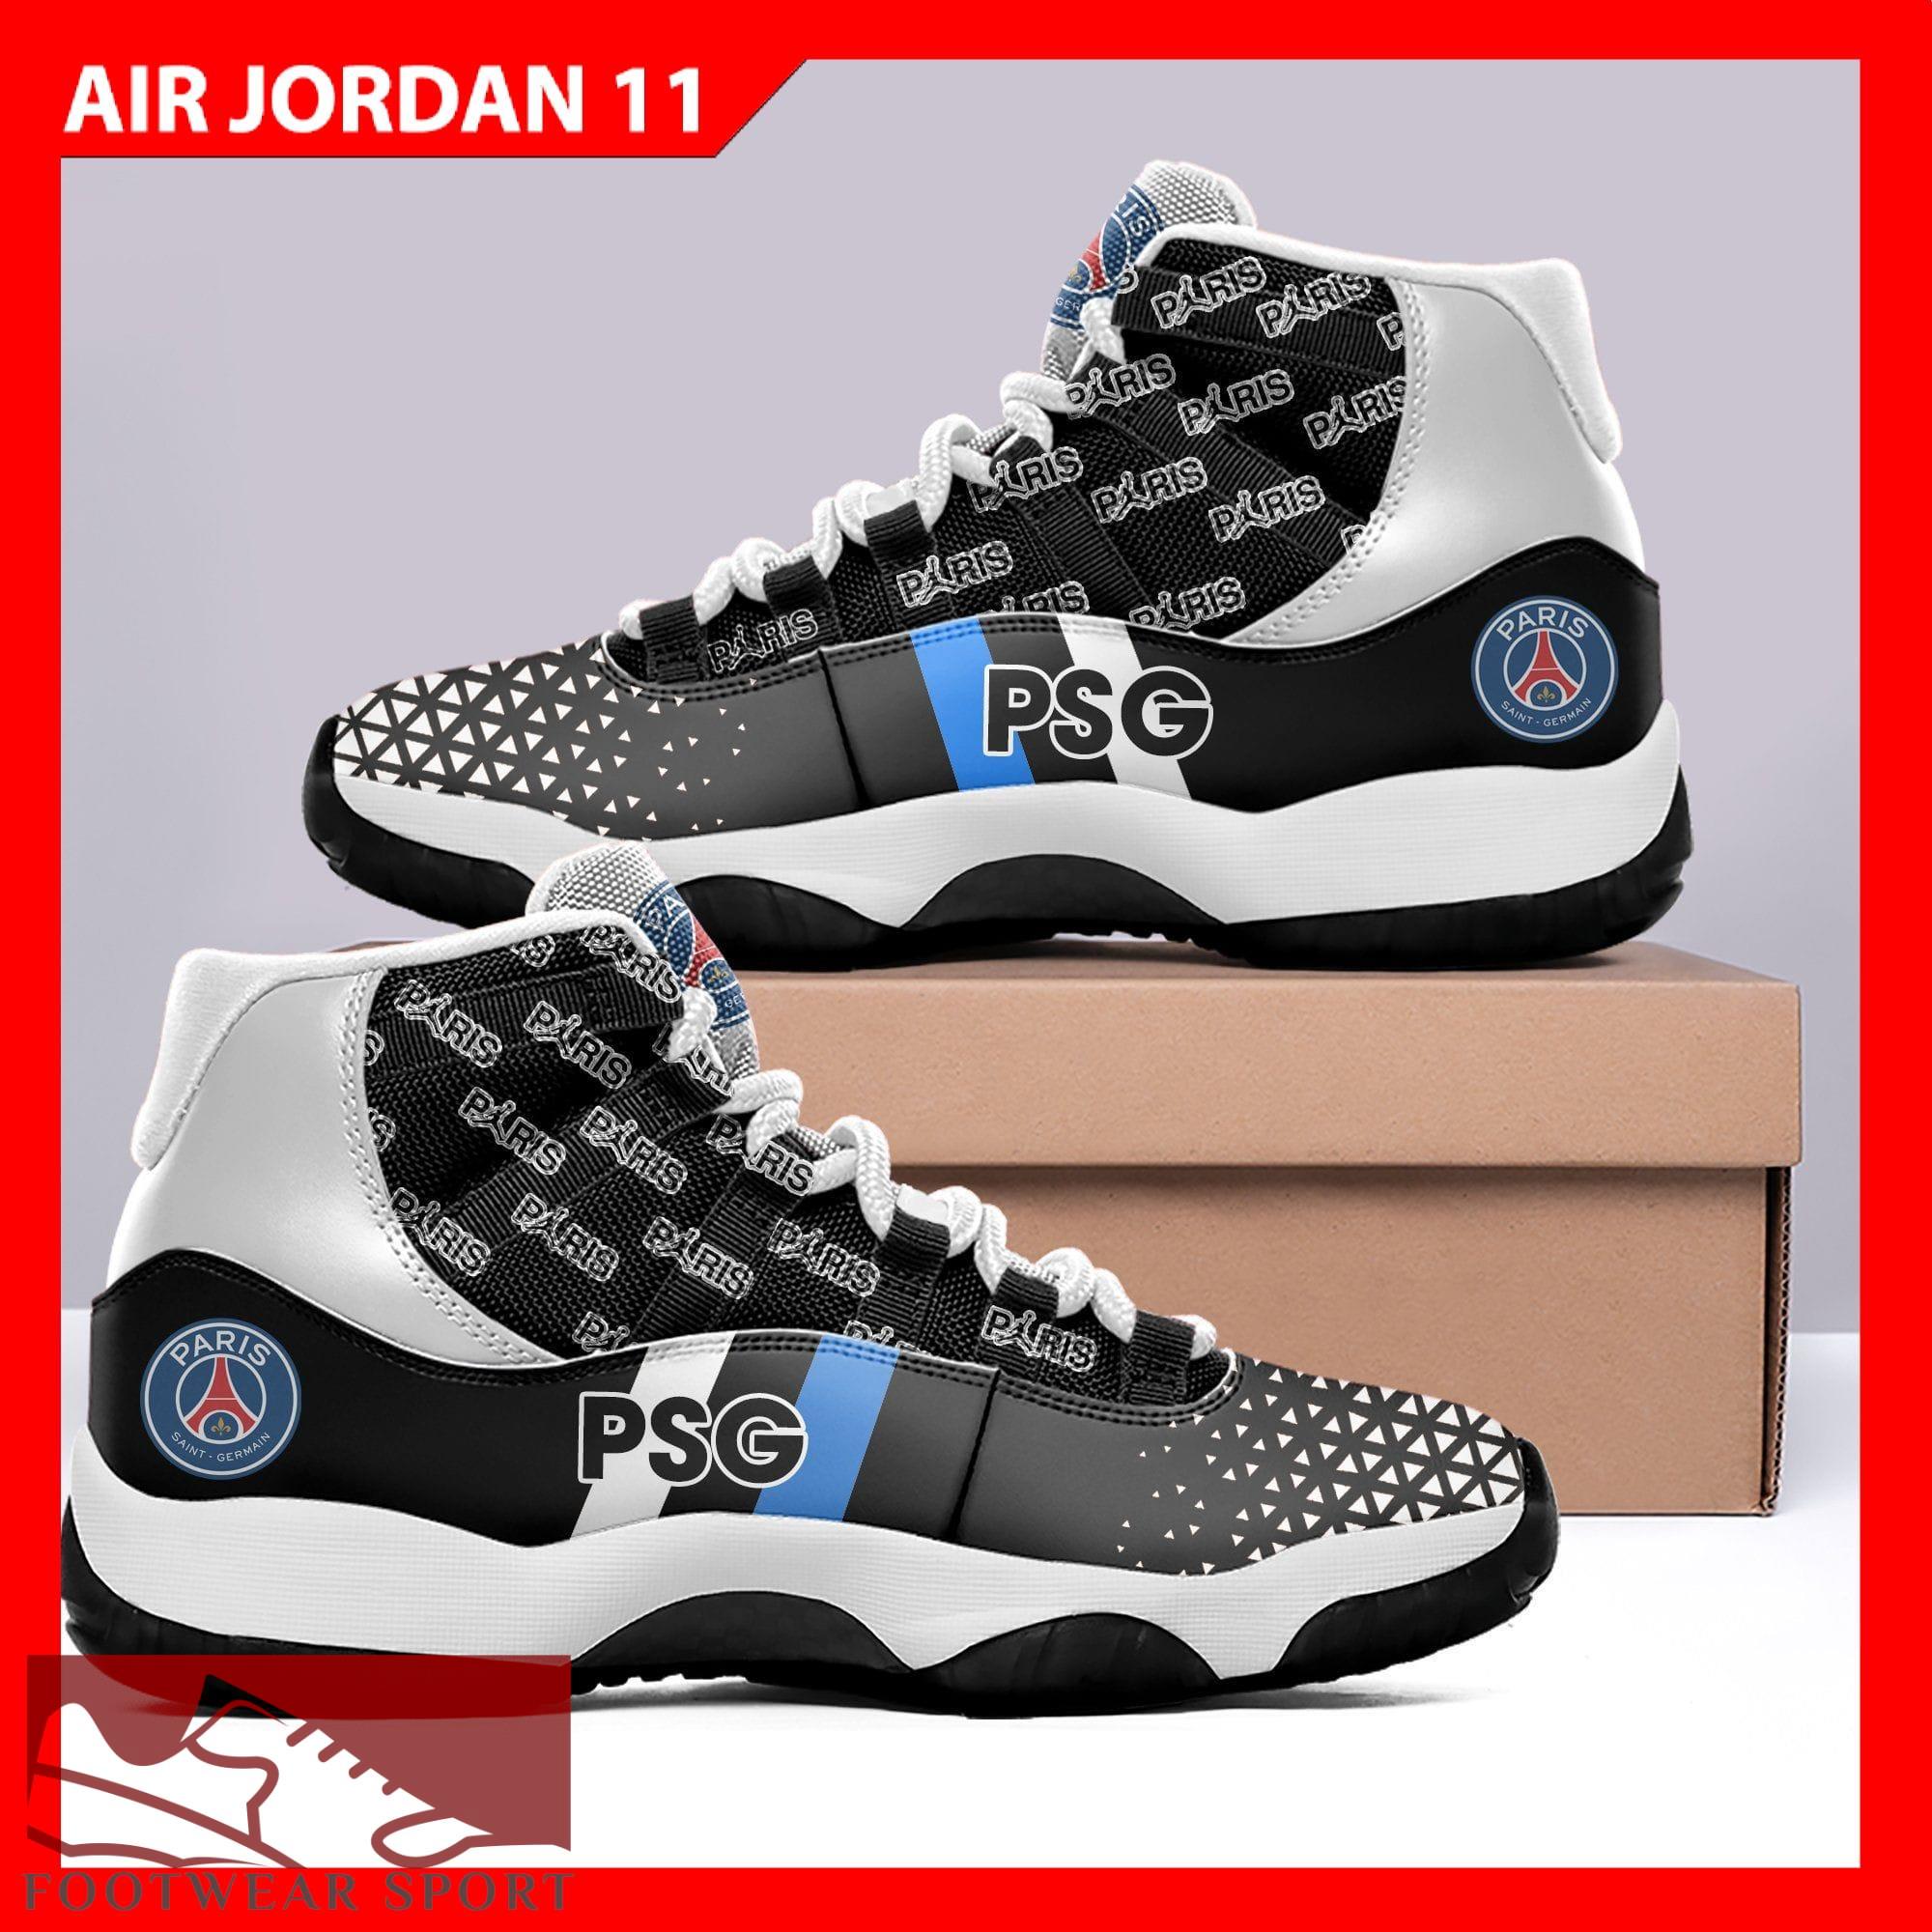 PSG Logo Football Sneakers Unique Air Jordan 11 Shoes For Men And Women - PSG JD11 Custom 02_3